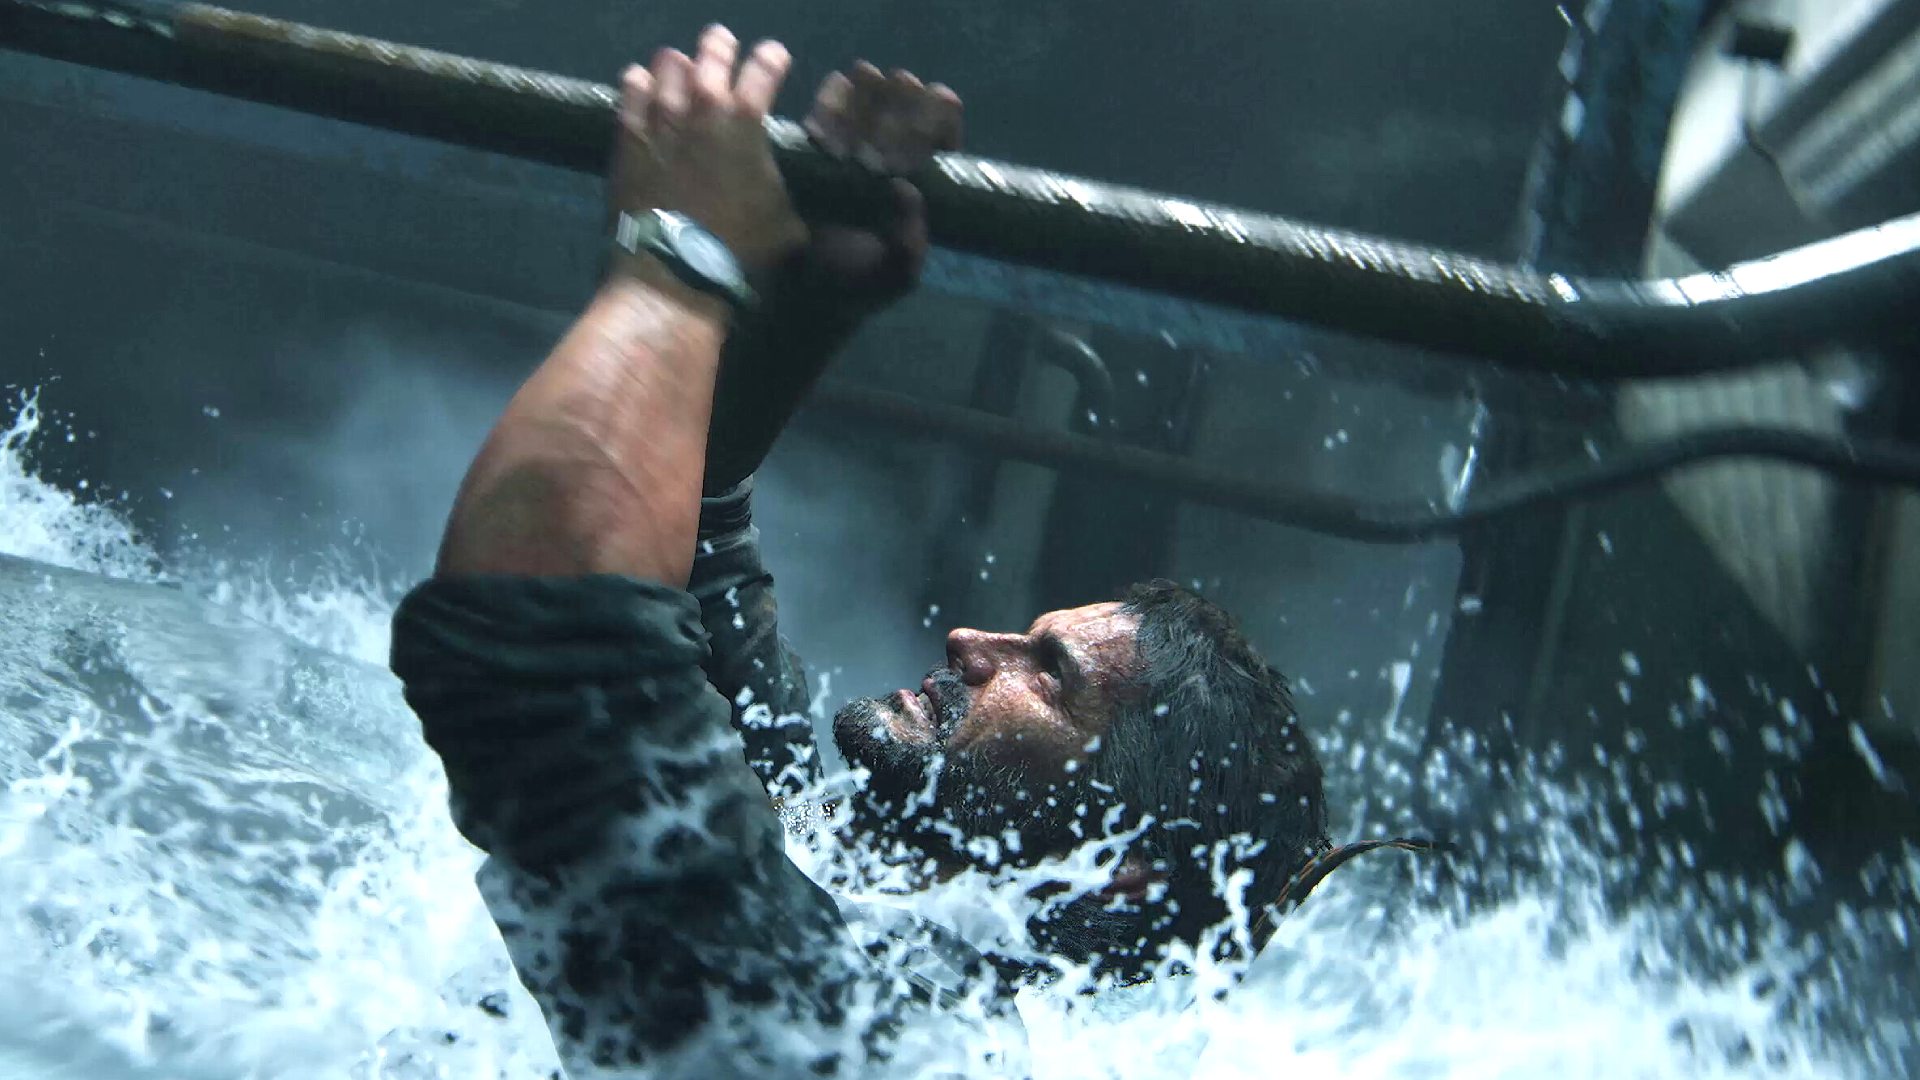 The best Last of Us settings: Joel hanging onto pipe in water